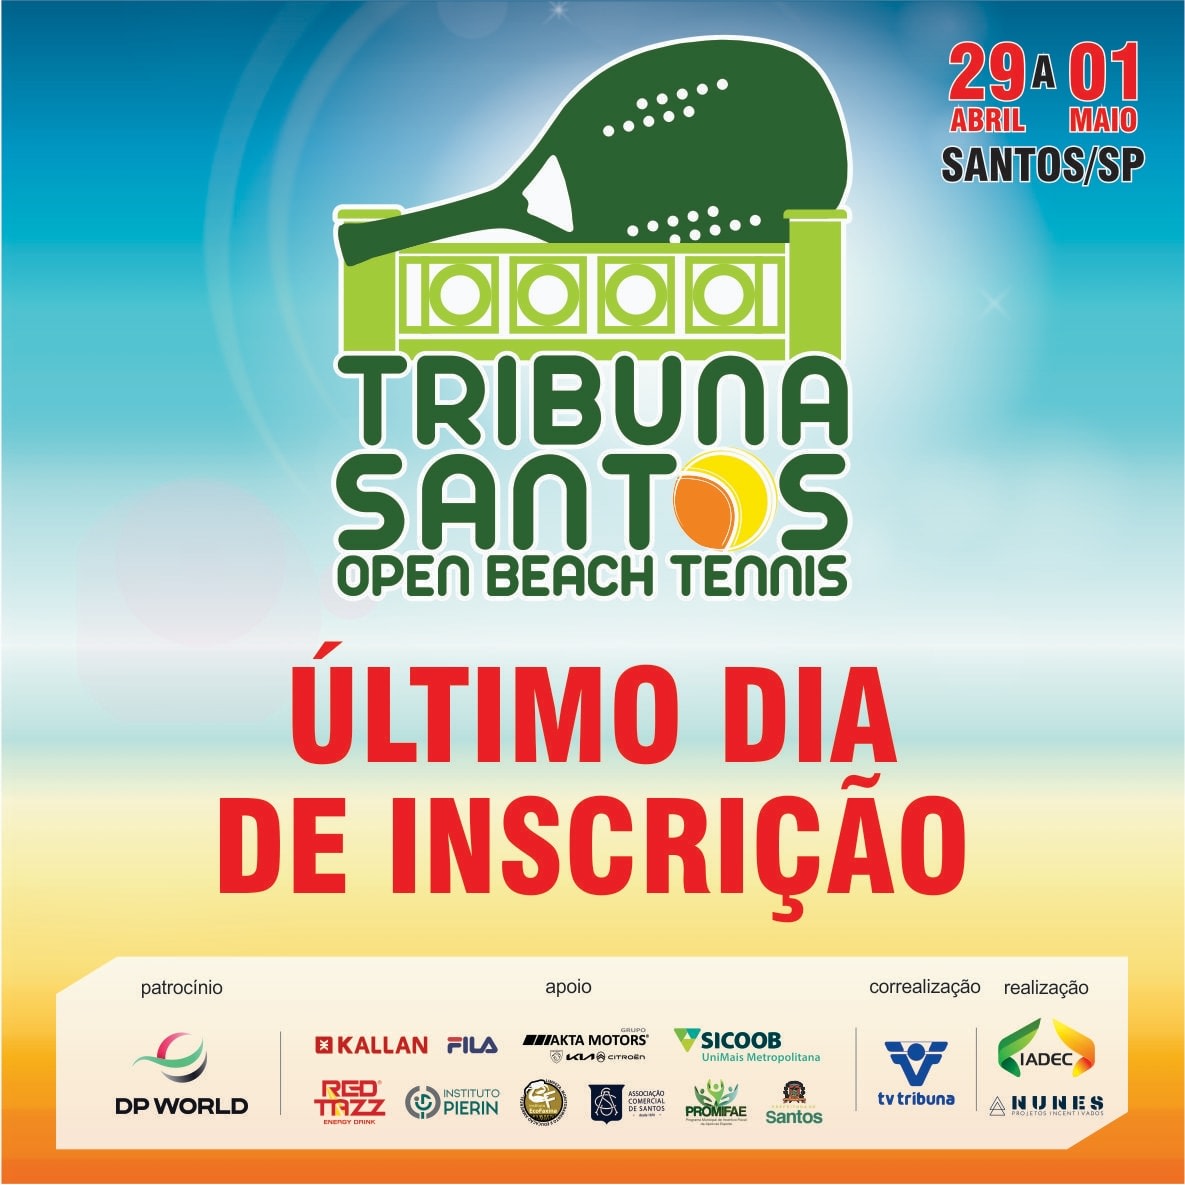 Torneio A Tribuna de Tênis define chaves de duplas neste domingo